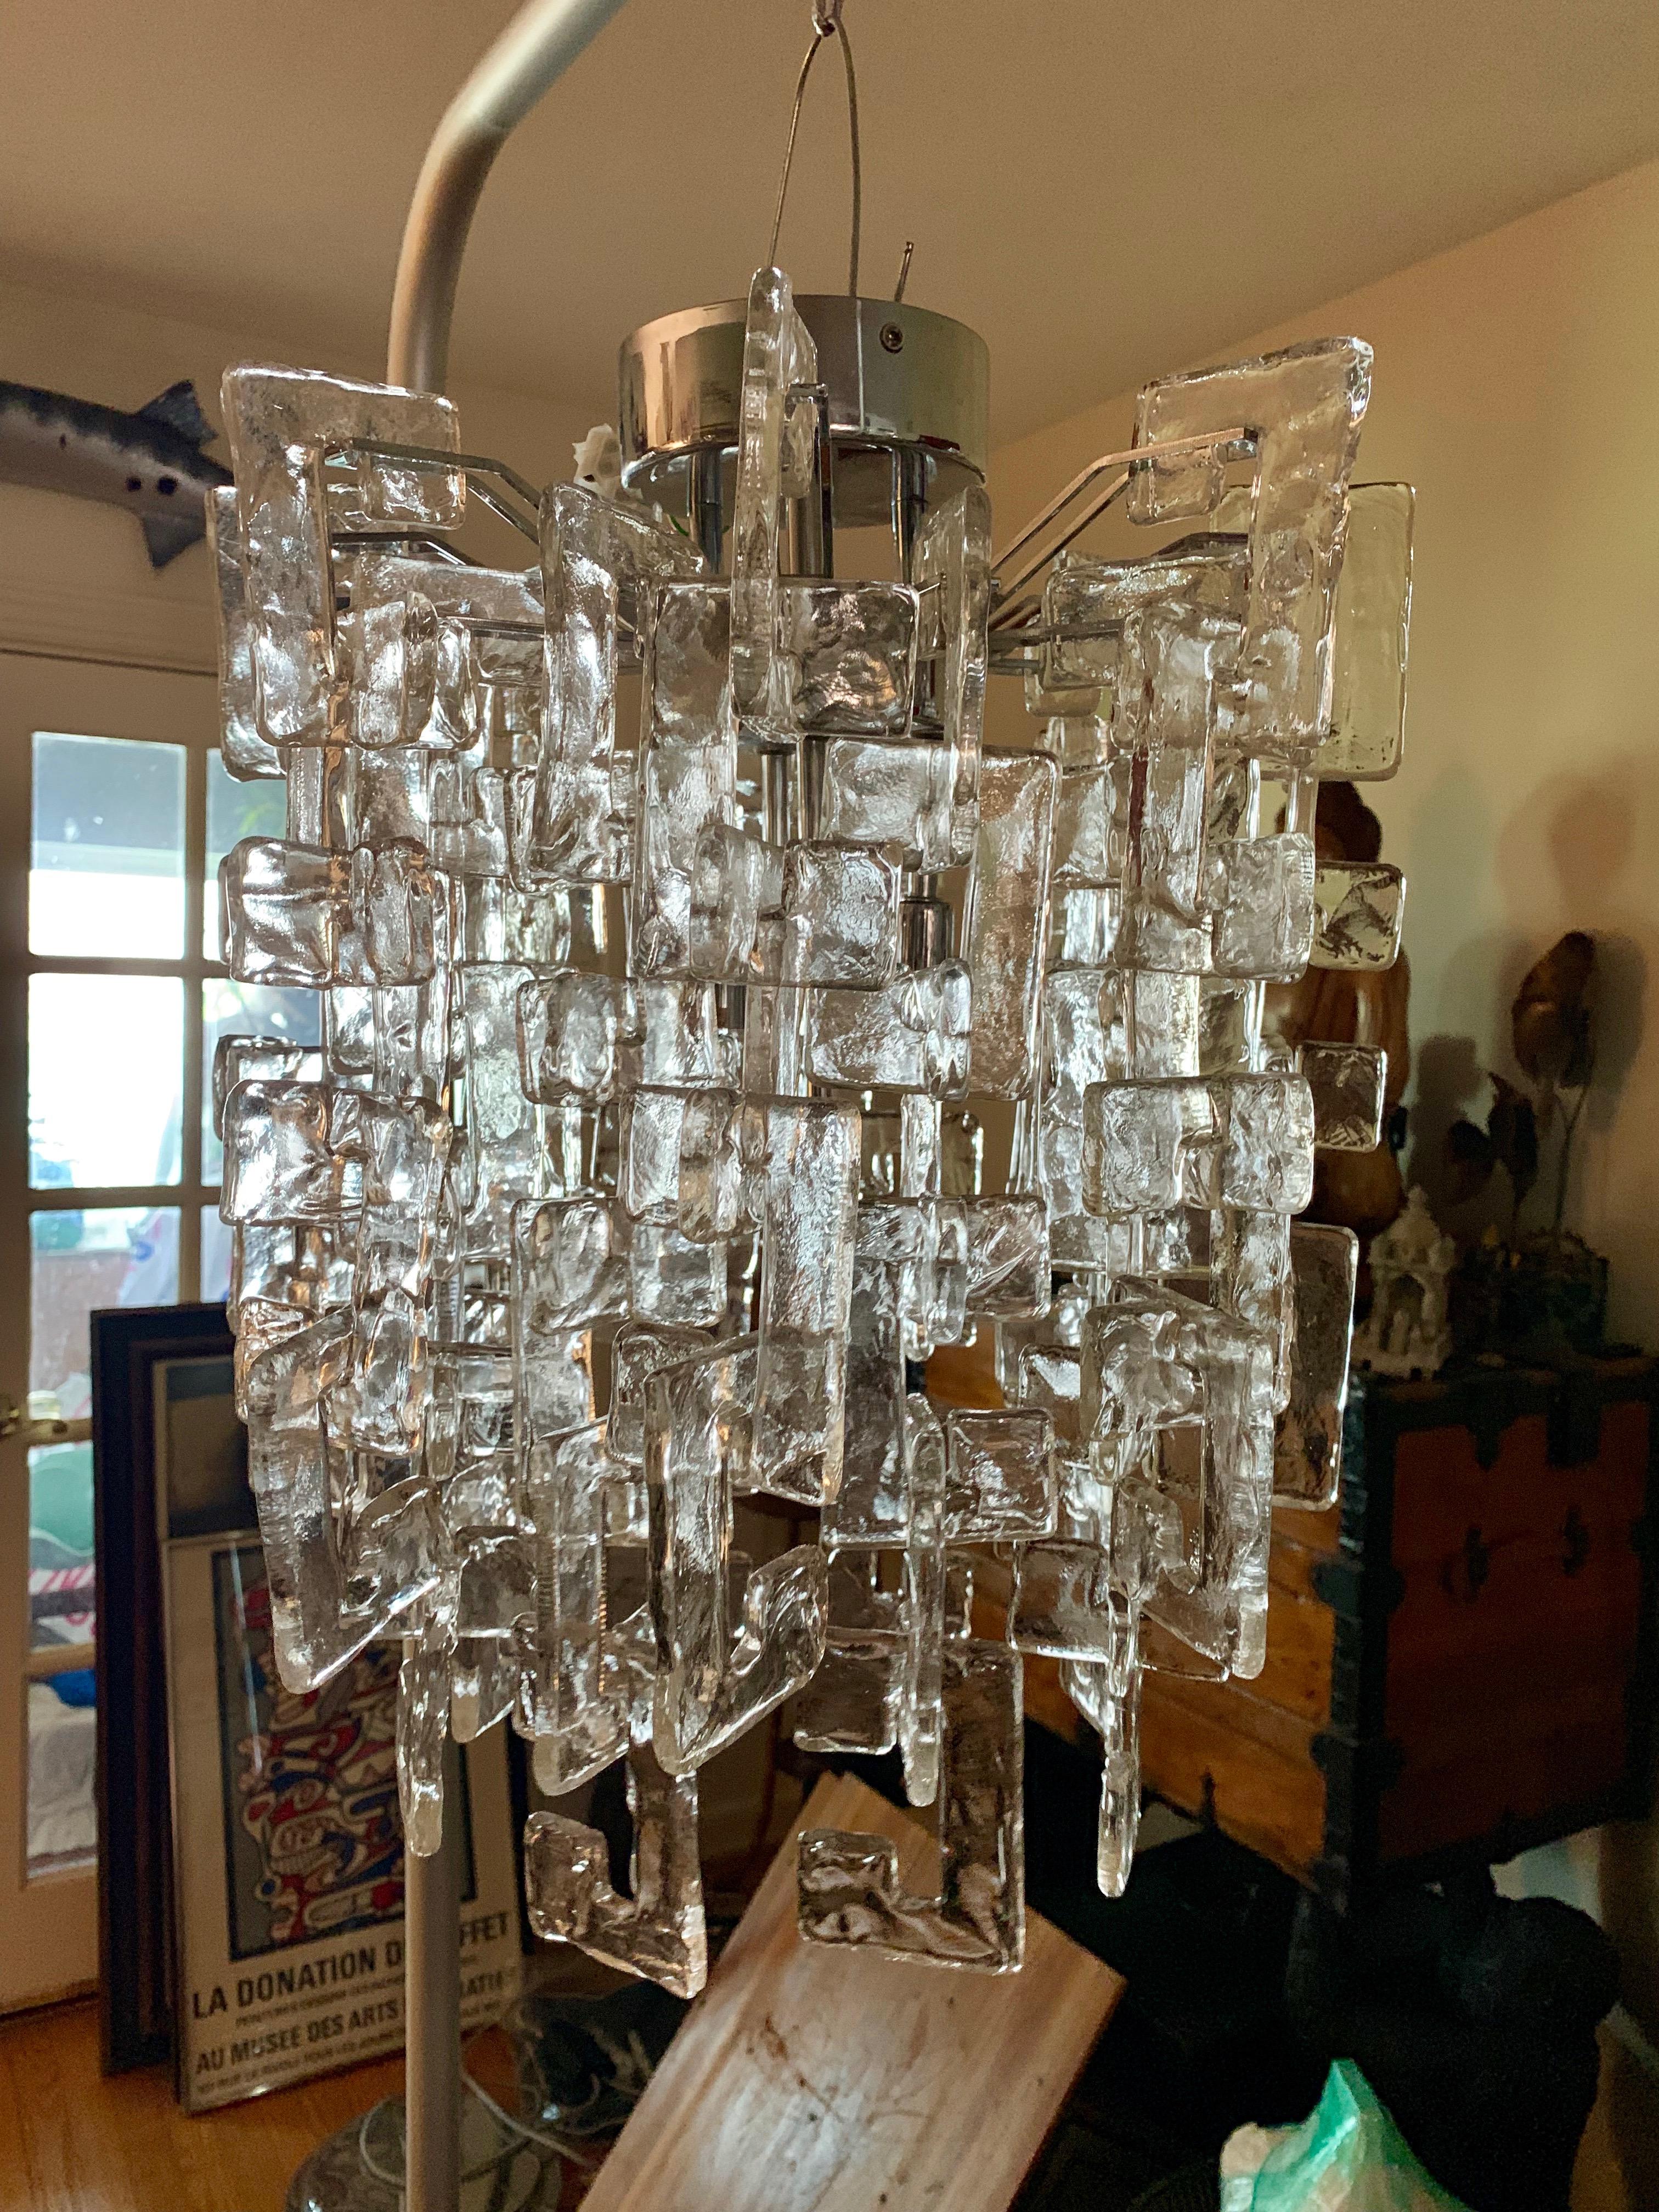 Carlo Nason Mazzega Murano glass chandelier
Murano interlocking glass chandelier, with large clear squared 